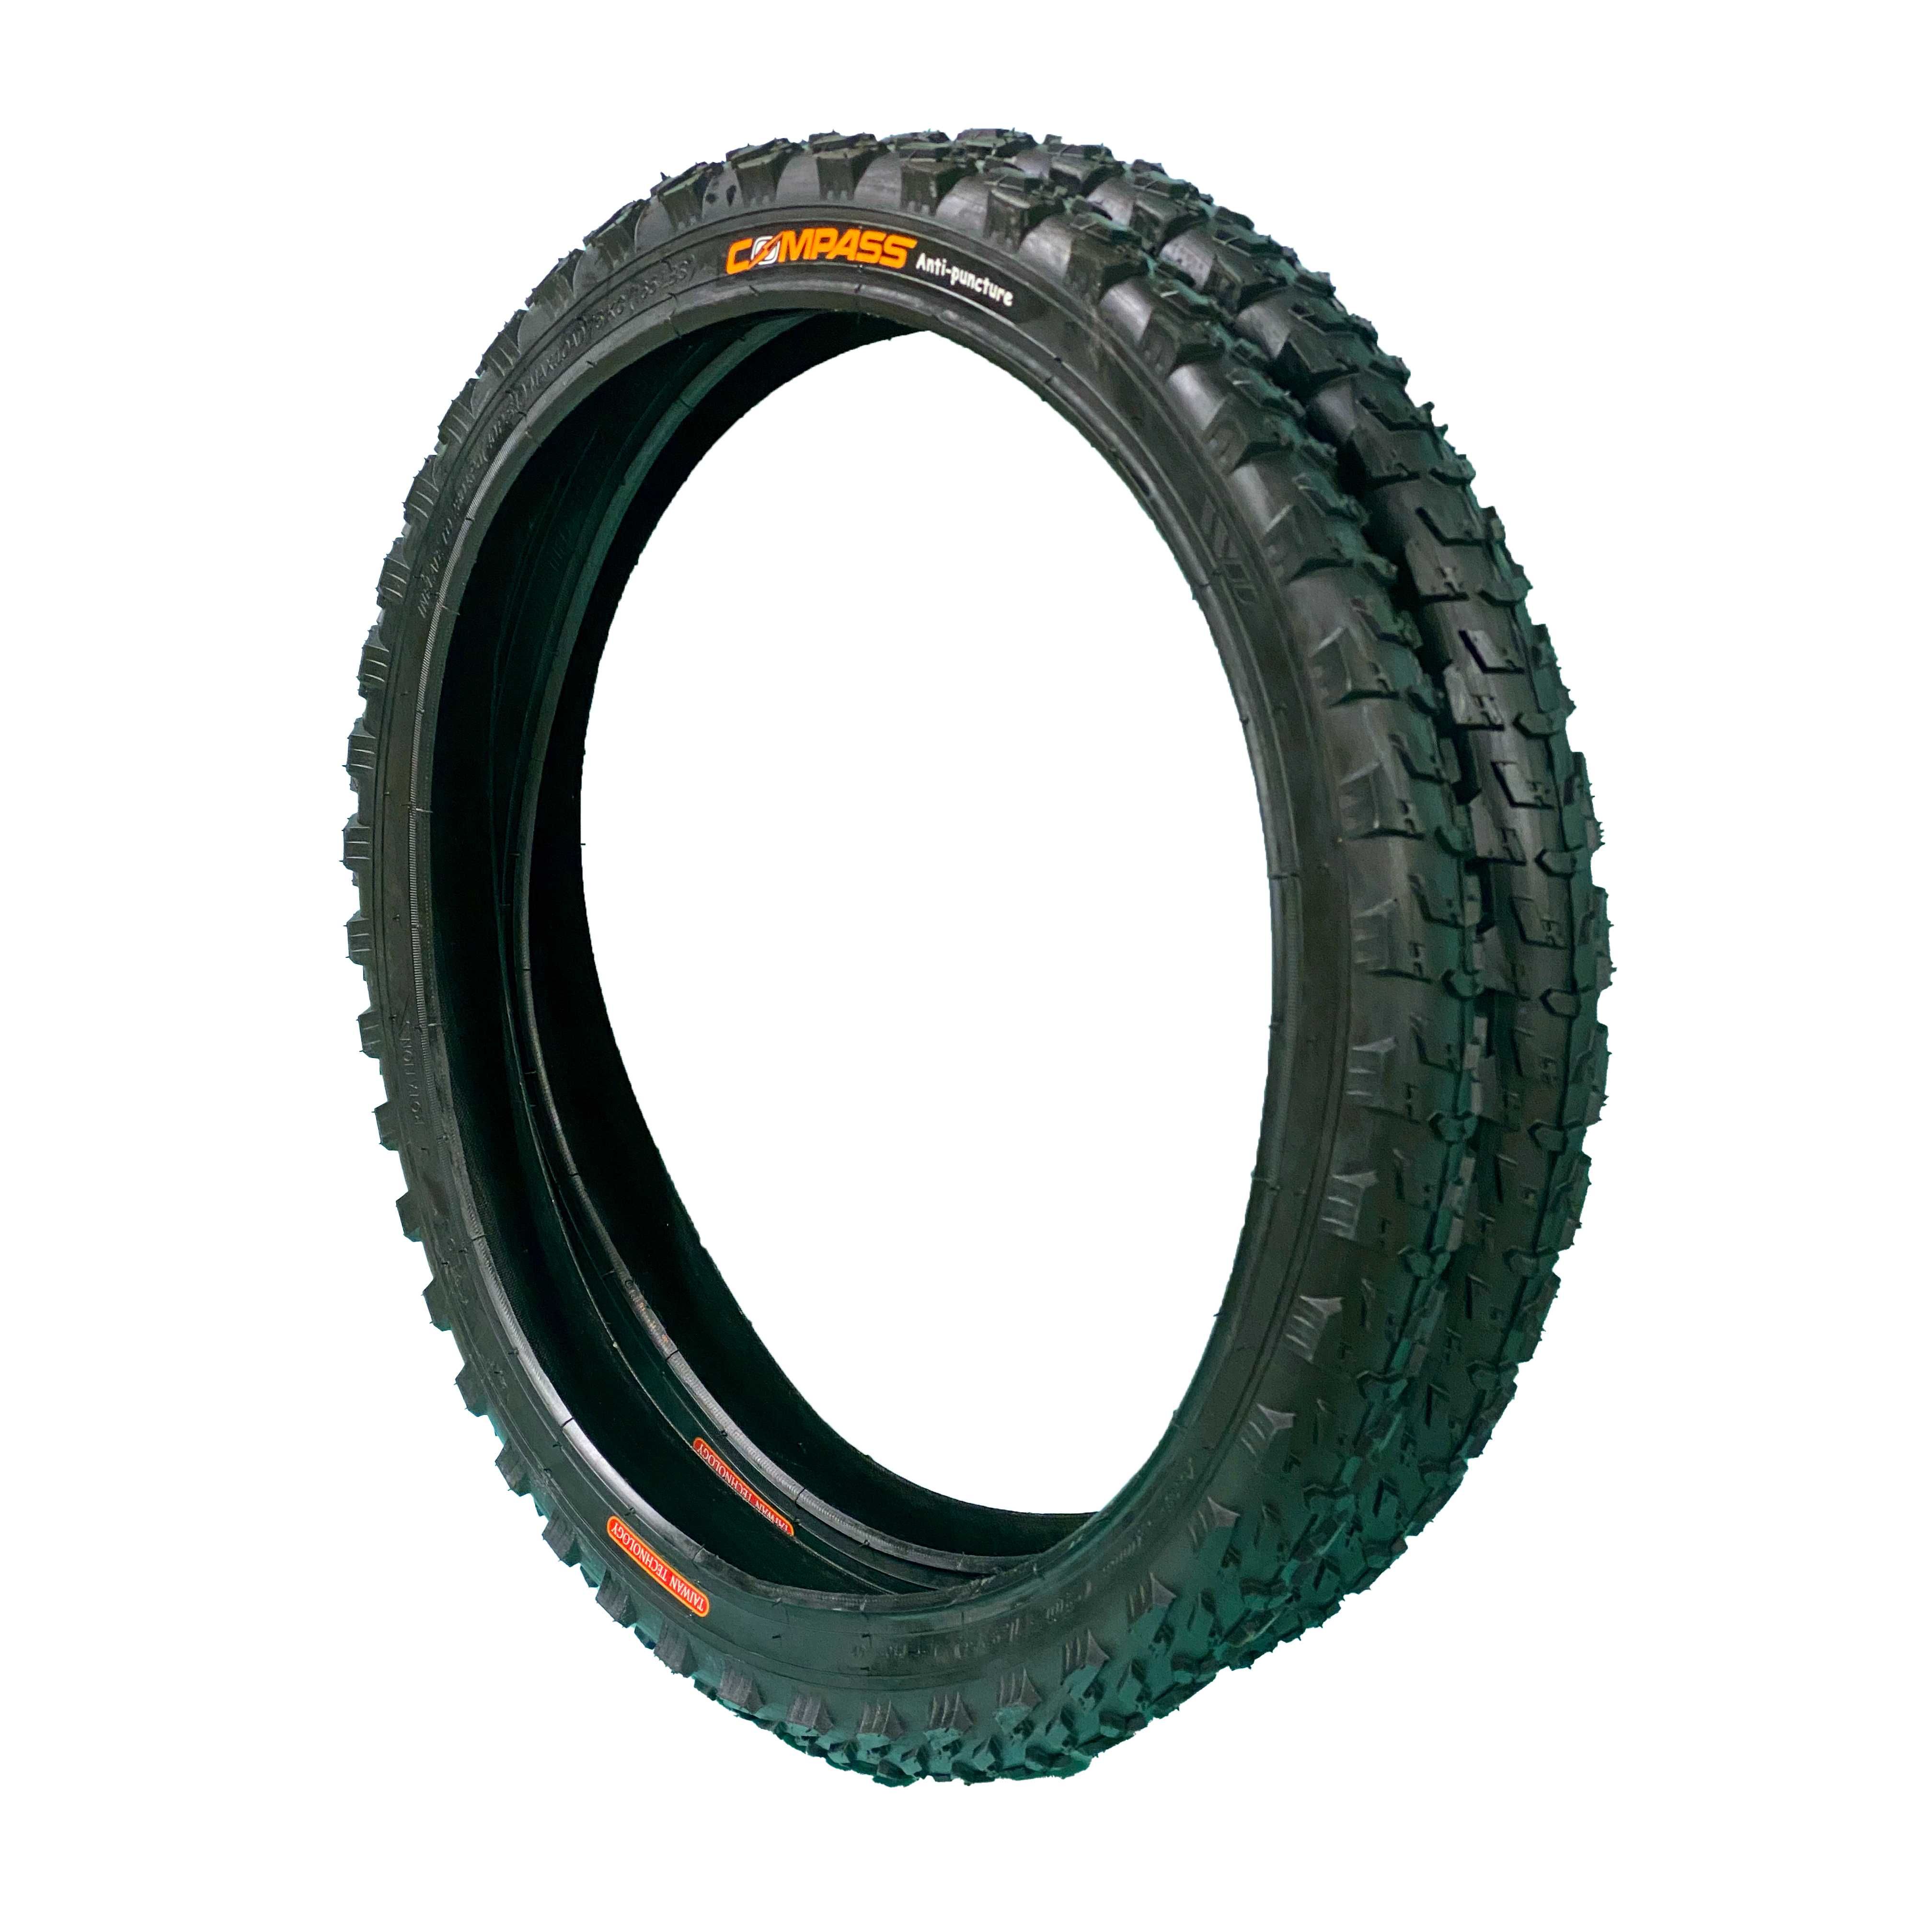 Външна гума за велосипед COMPASS (20 х 1.95) Защита от спукване - 4мм